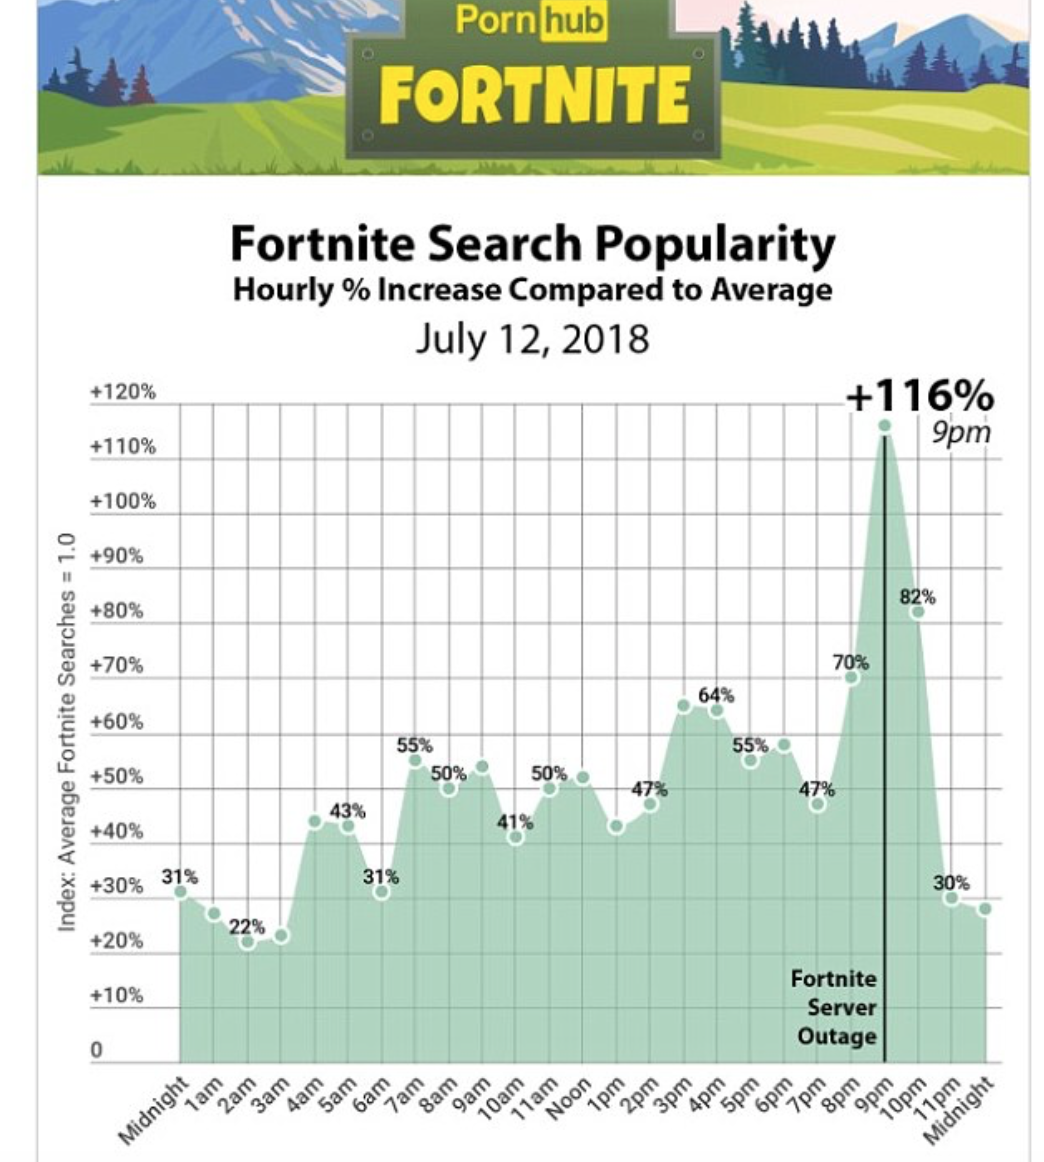 Il grafico di Pornhub dedicato alle ricerche su Fortnite